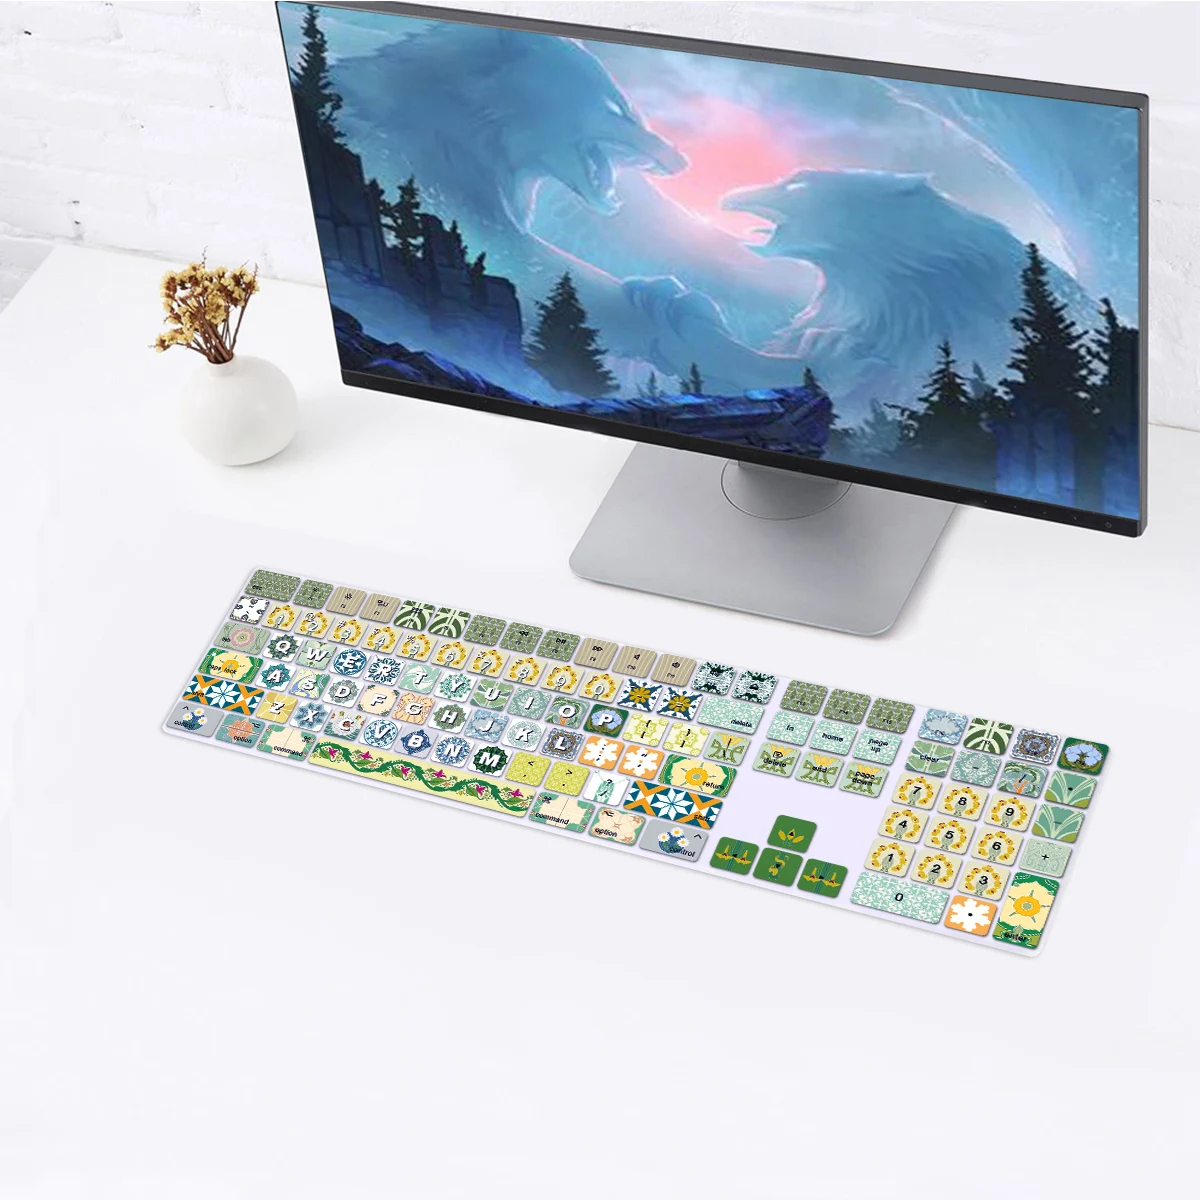 

Силиконовая накладка на клавиатуру для Apple iMac, беспроводная Волшебная клавиатура с цифровой клавиатурой MQ052LL/A A1843, выпуск 2017 2018, американская Раскладка